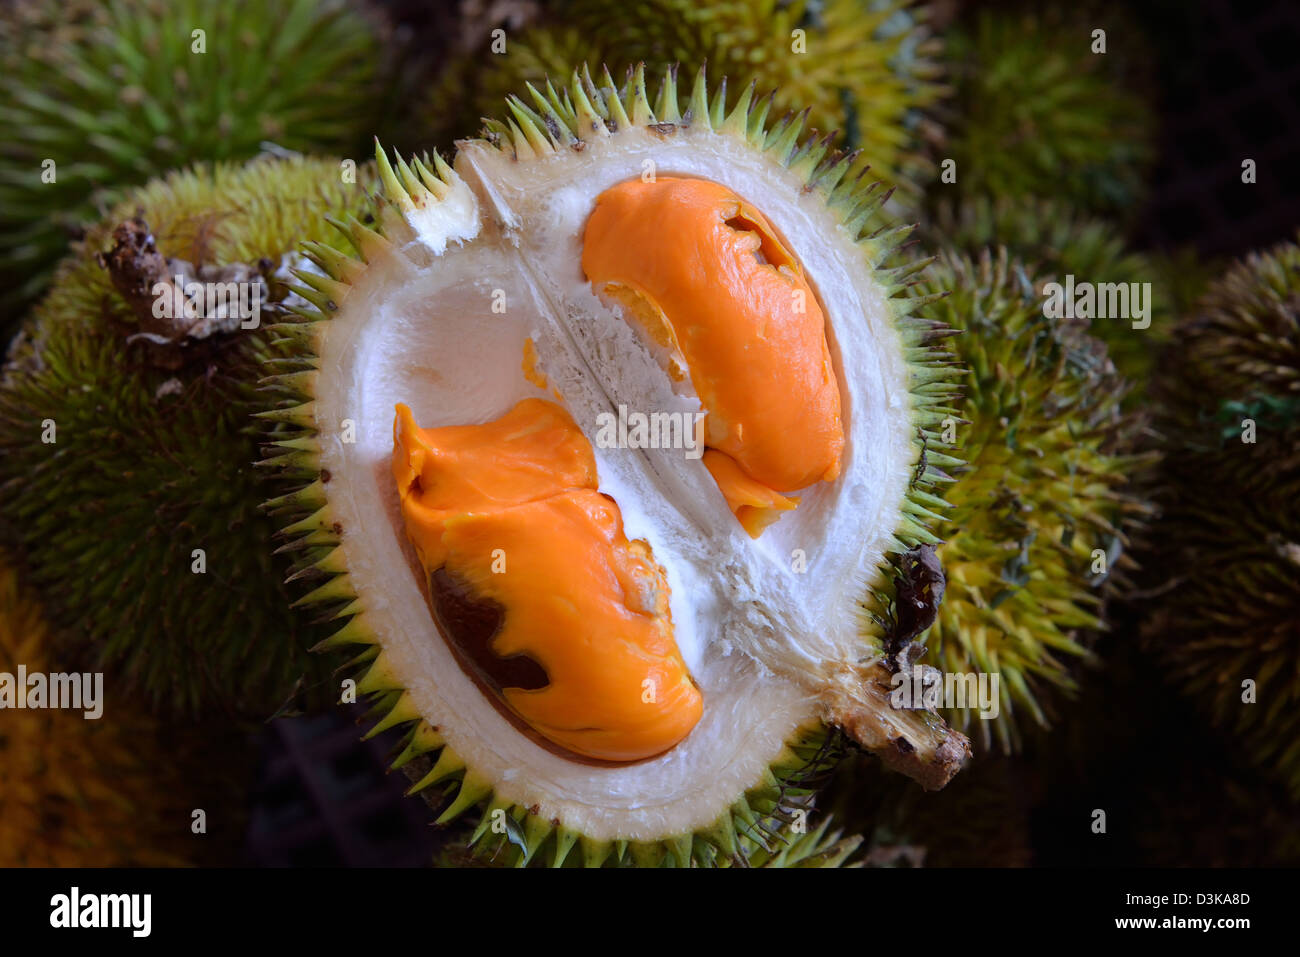 Download 810 Gambar Hantu Durian Terbaik Gratis